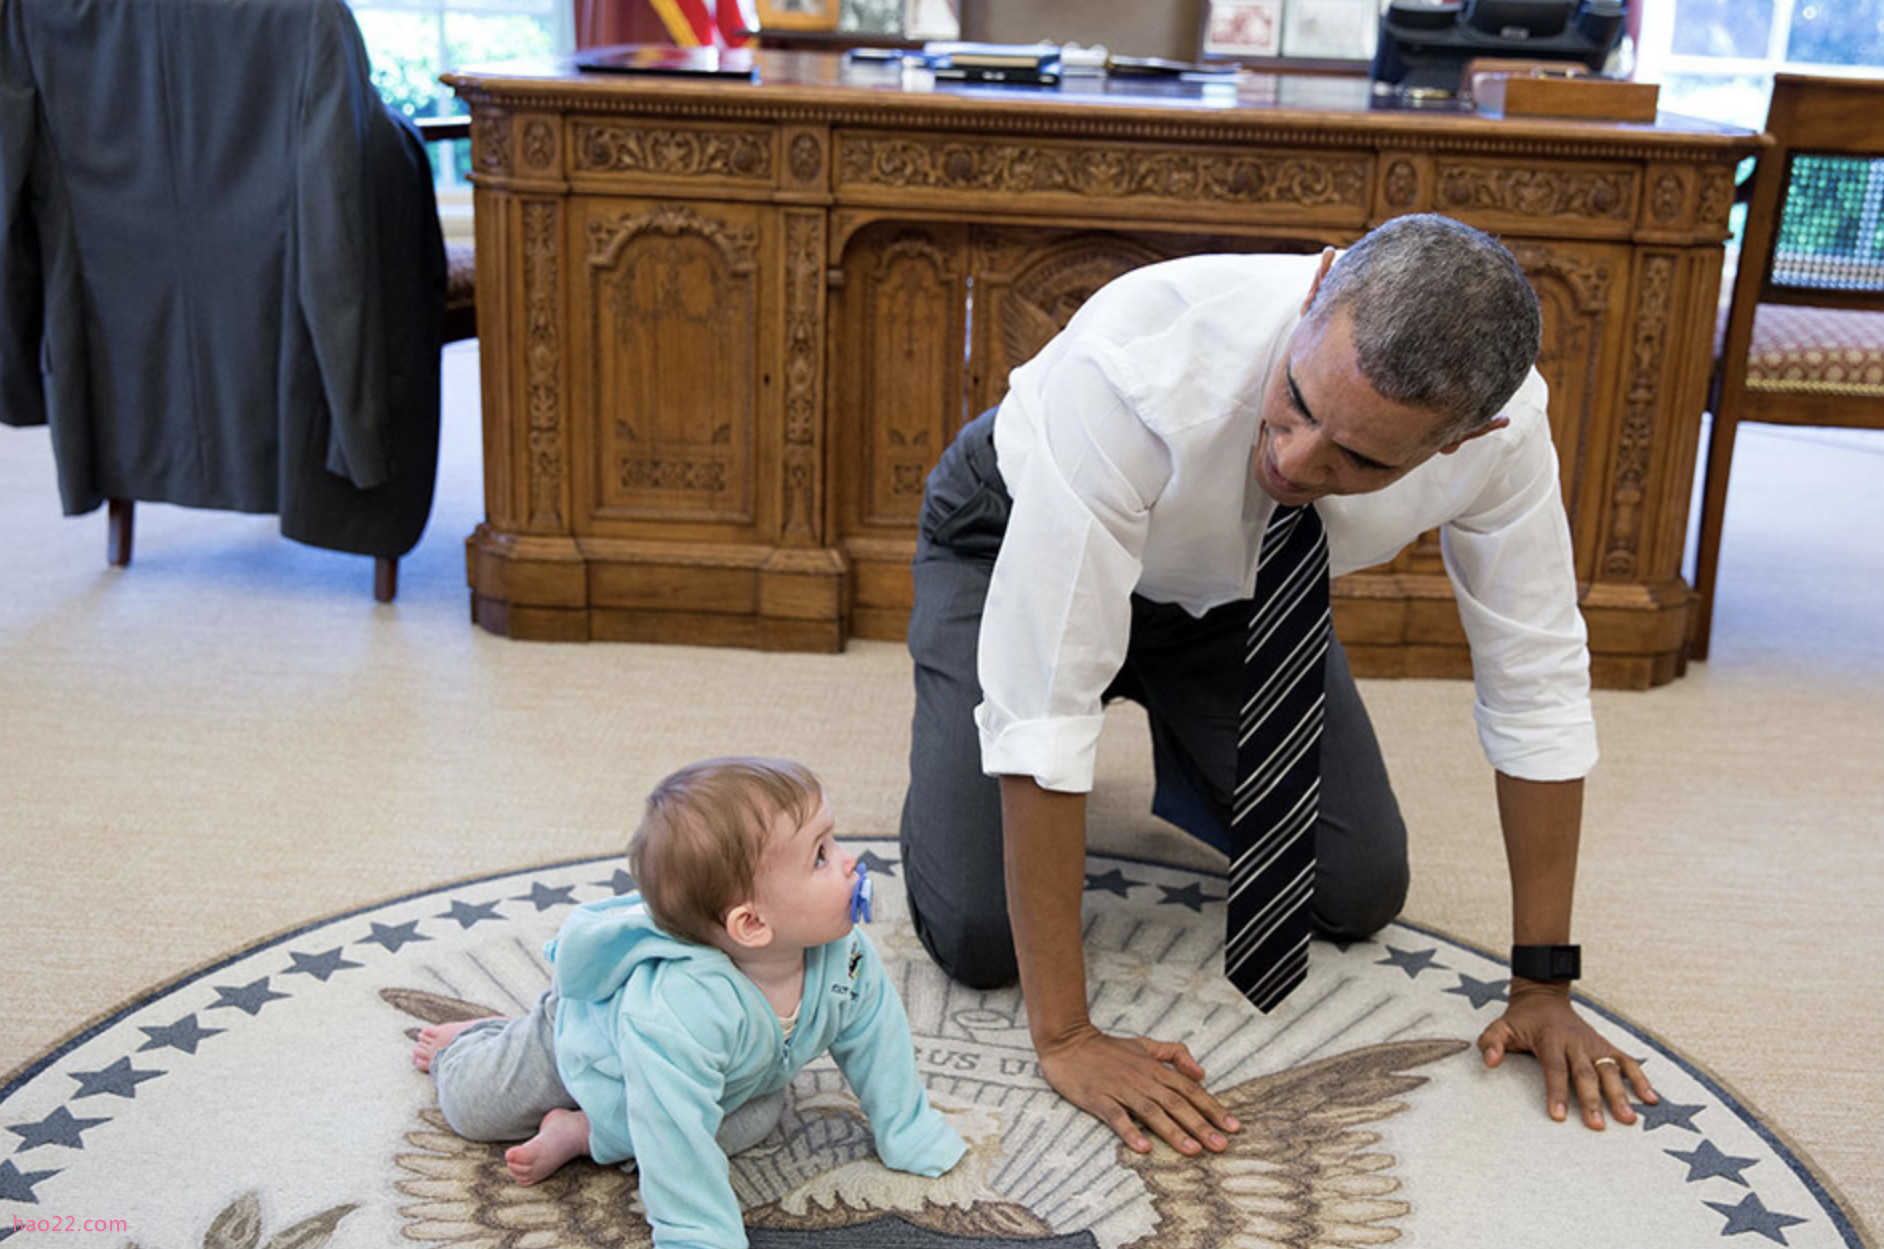 白宫公布奥巴马任内最后一年最佳图片 